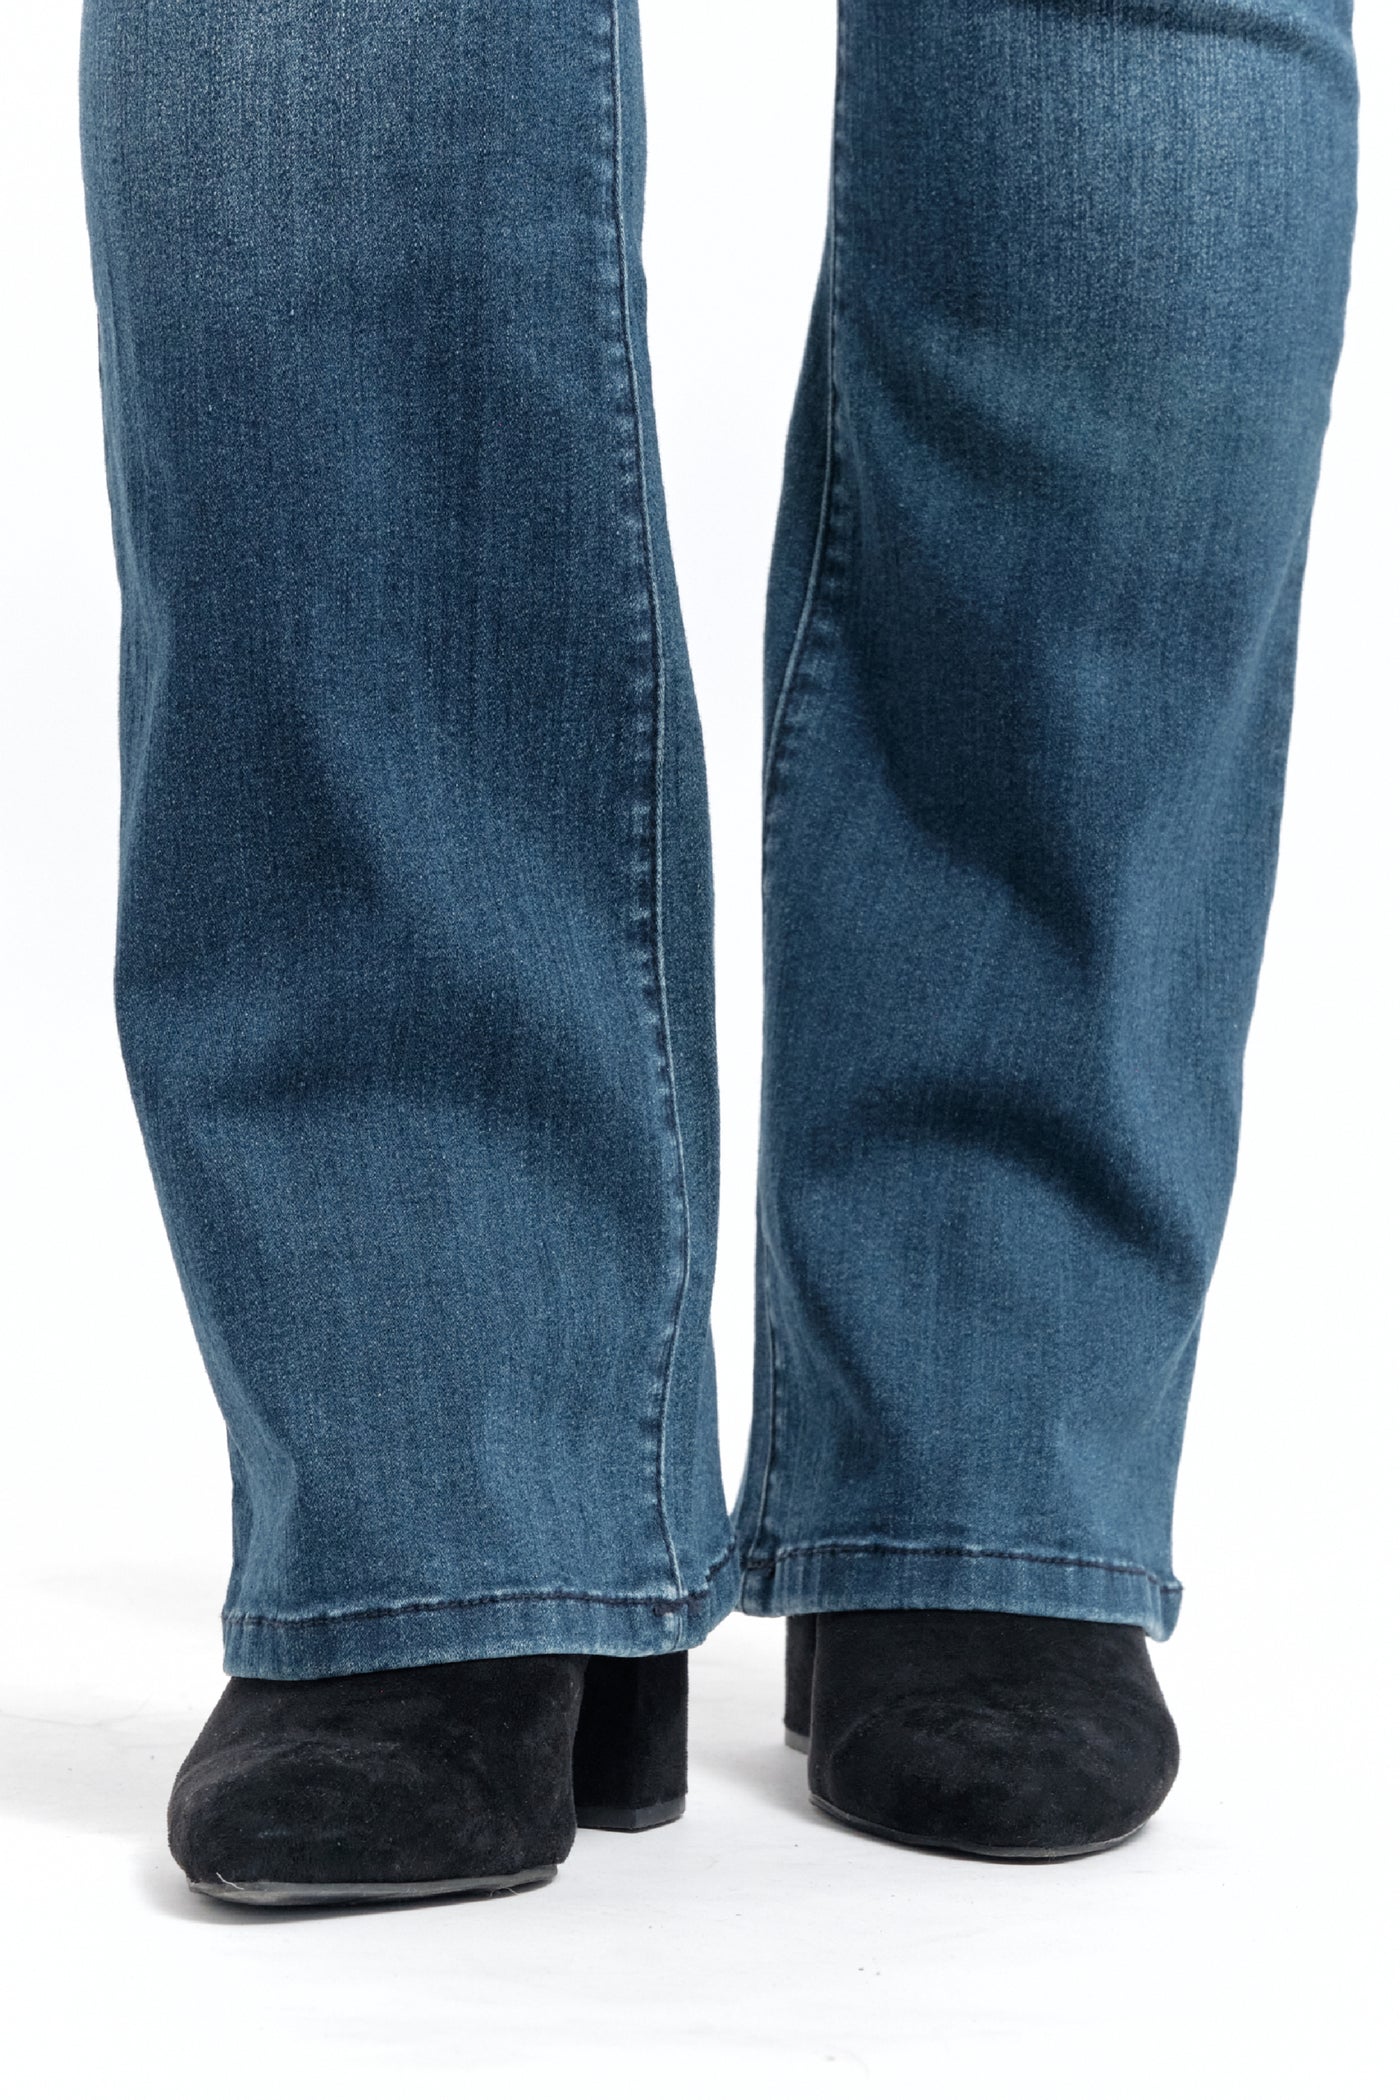 1822 Denim Men's Straight Leg Jeans